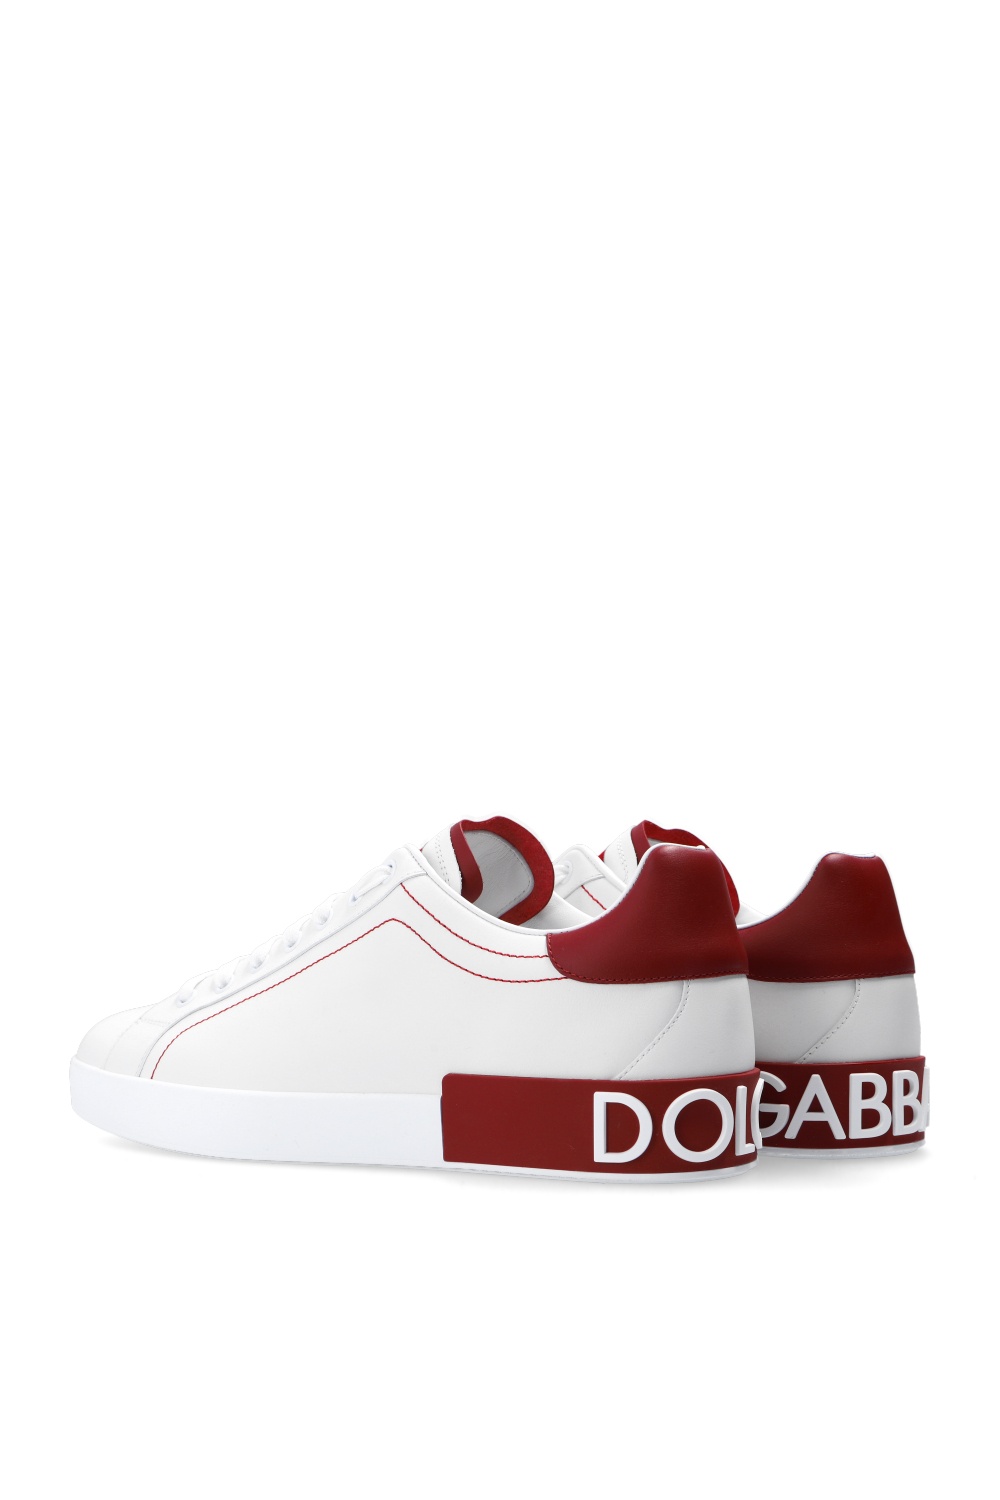 Dolce & Gabbana KIDS GIRLS CLOTHES 4-14 YEARS SWIMWEAR ‘Portofino’ sneakers